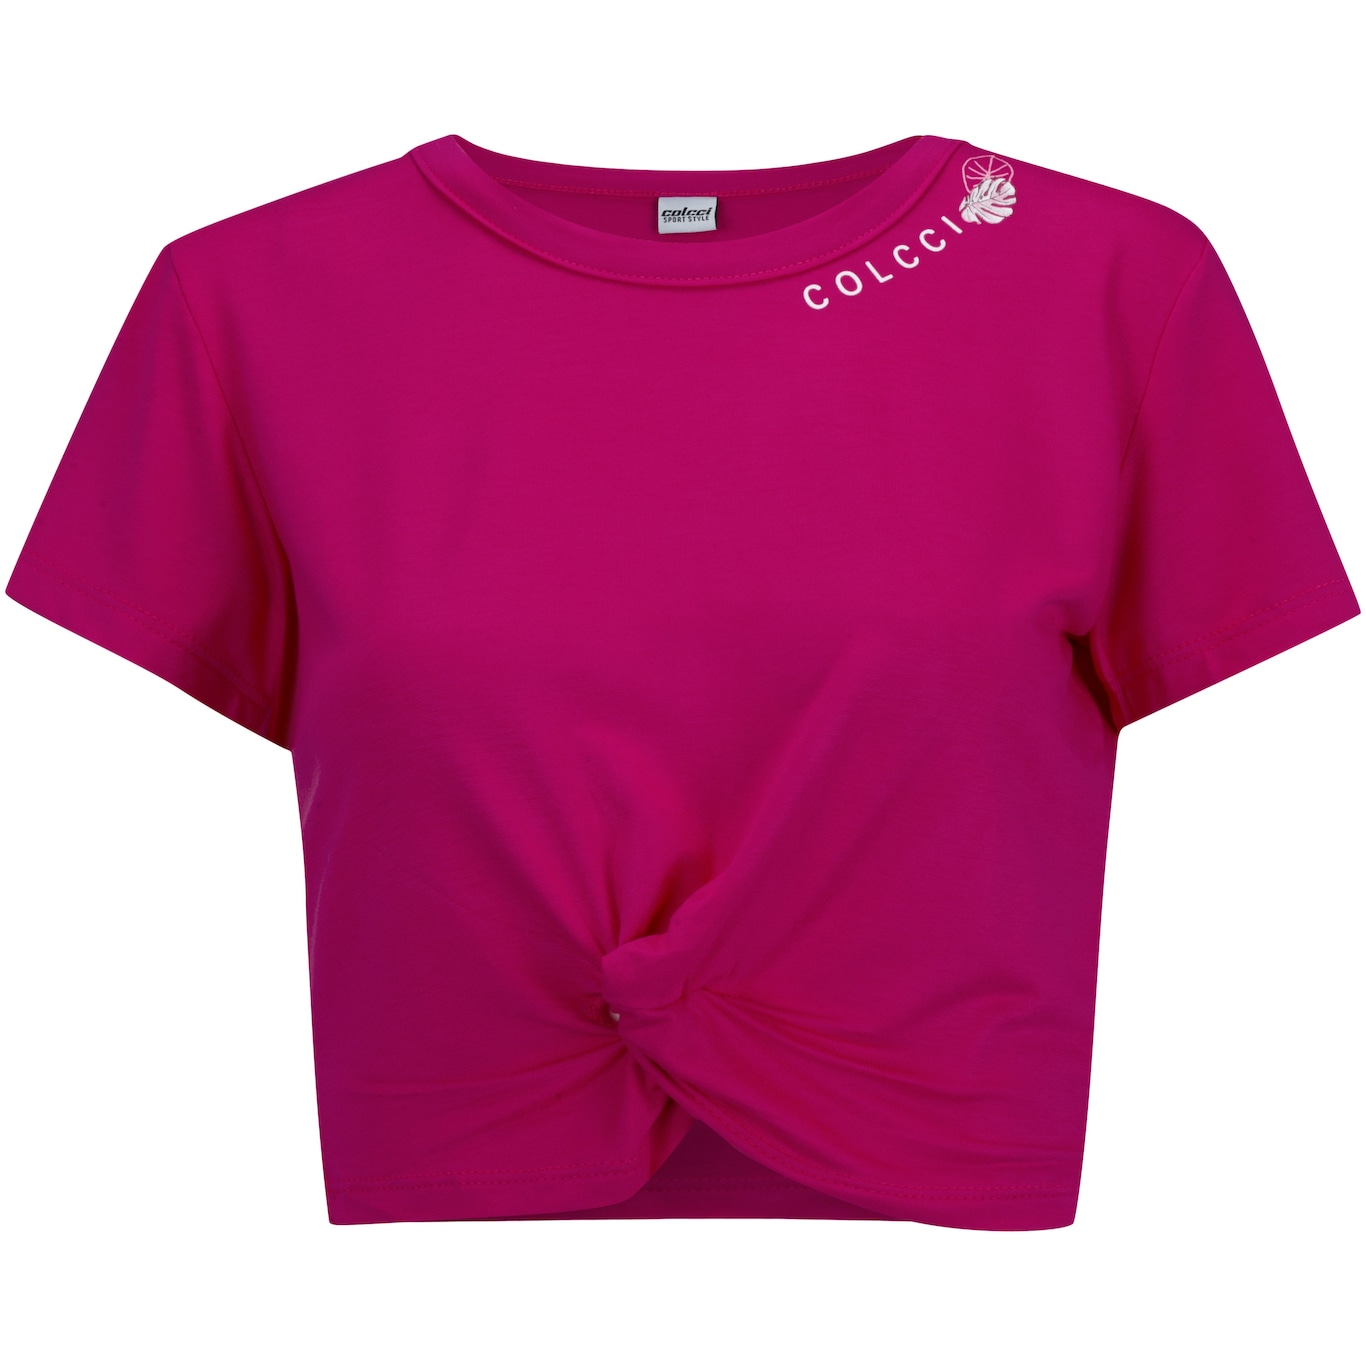 Blusa Cropped Nózinho Feminina Rosa Pink - Compre agora